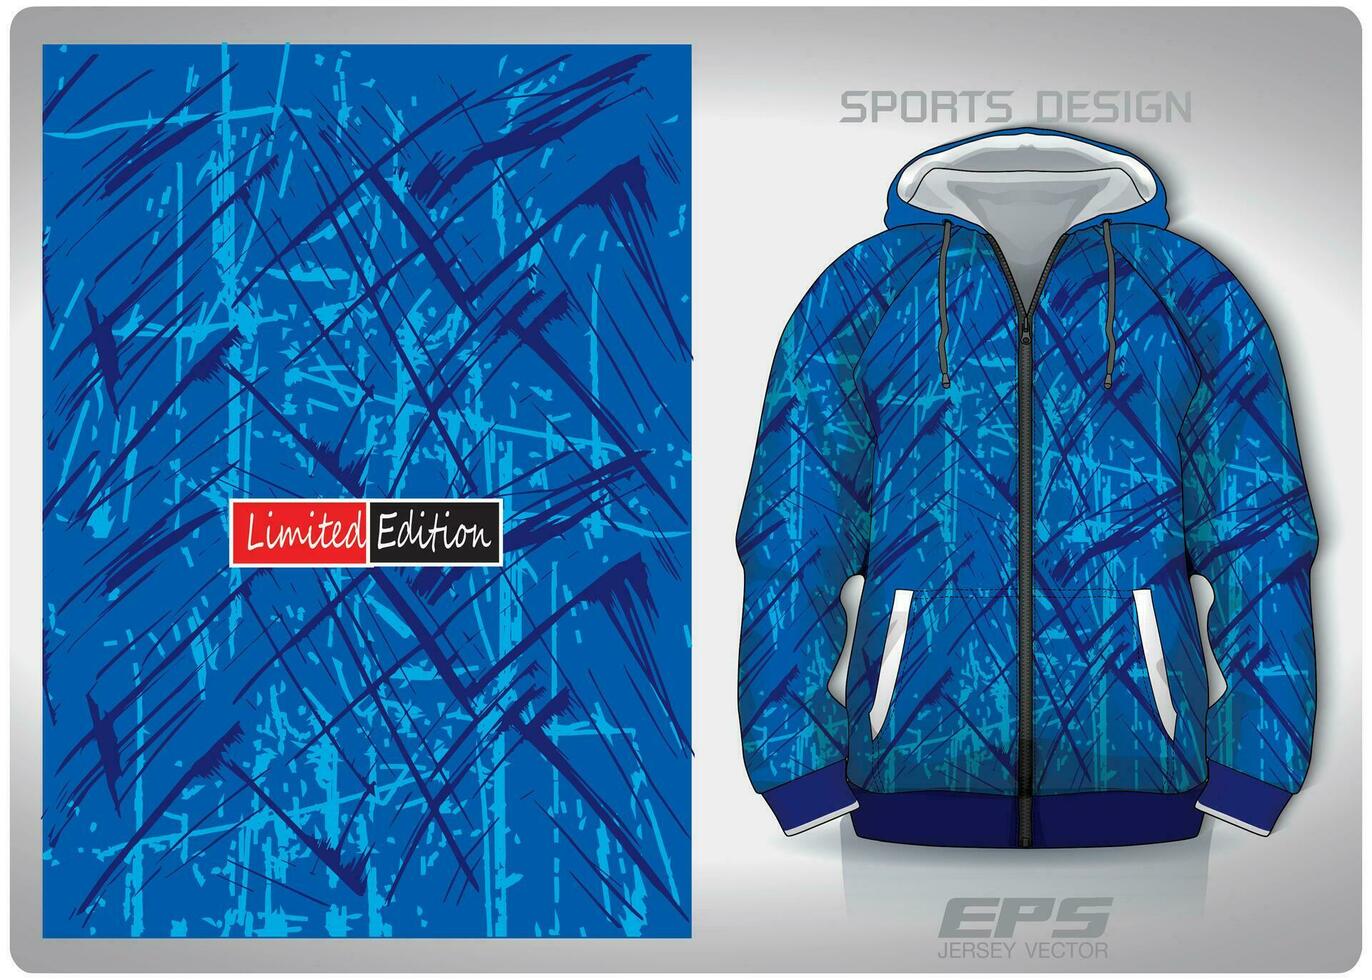 vektor sporter skjorta bakgrund bild.blå Färg sallad konst mönster design, illustration, textil- bakgrund för sporter lång ärm luvtröja, jersey luvtröja